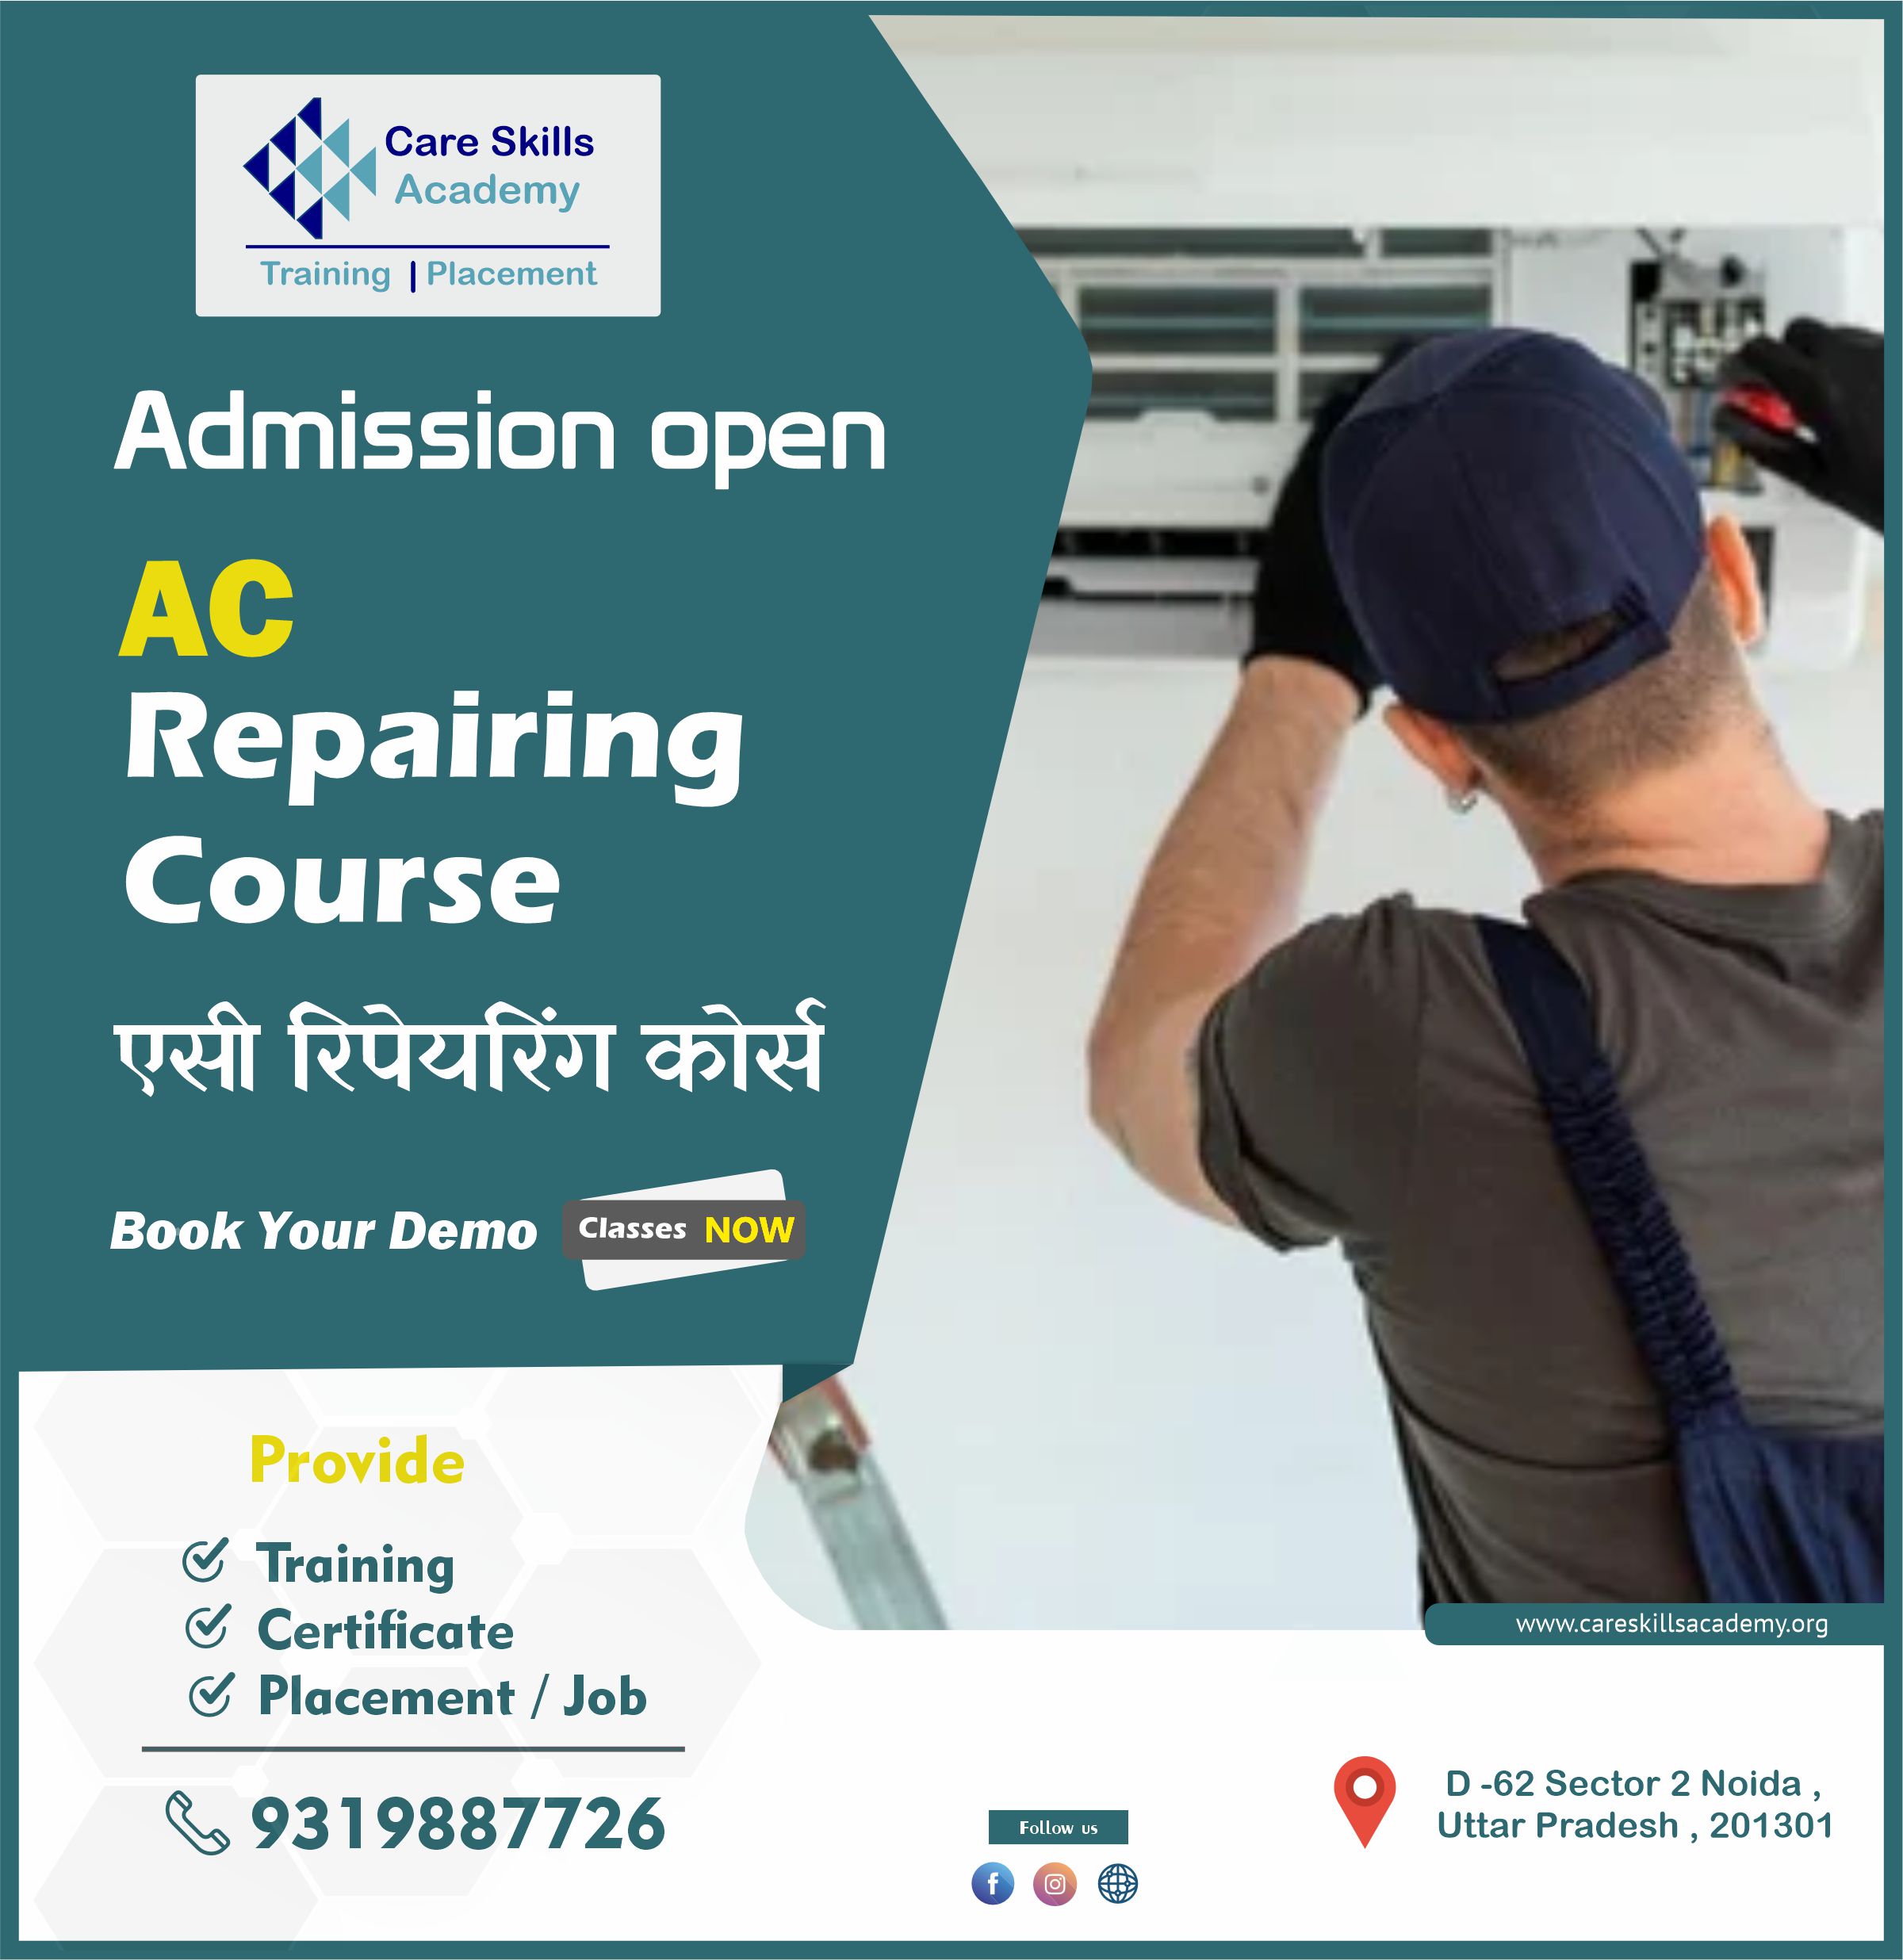 Best Institutes For AC Repairing Course in Noida